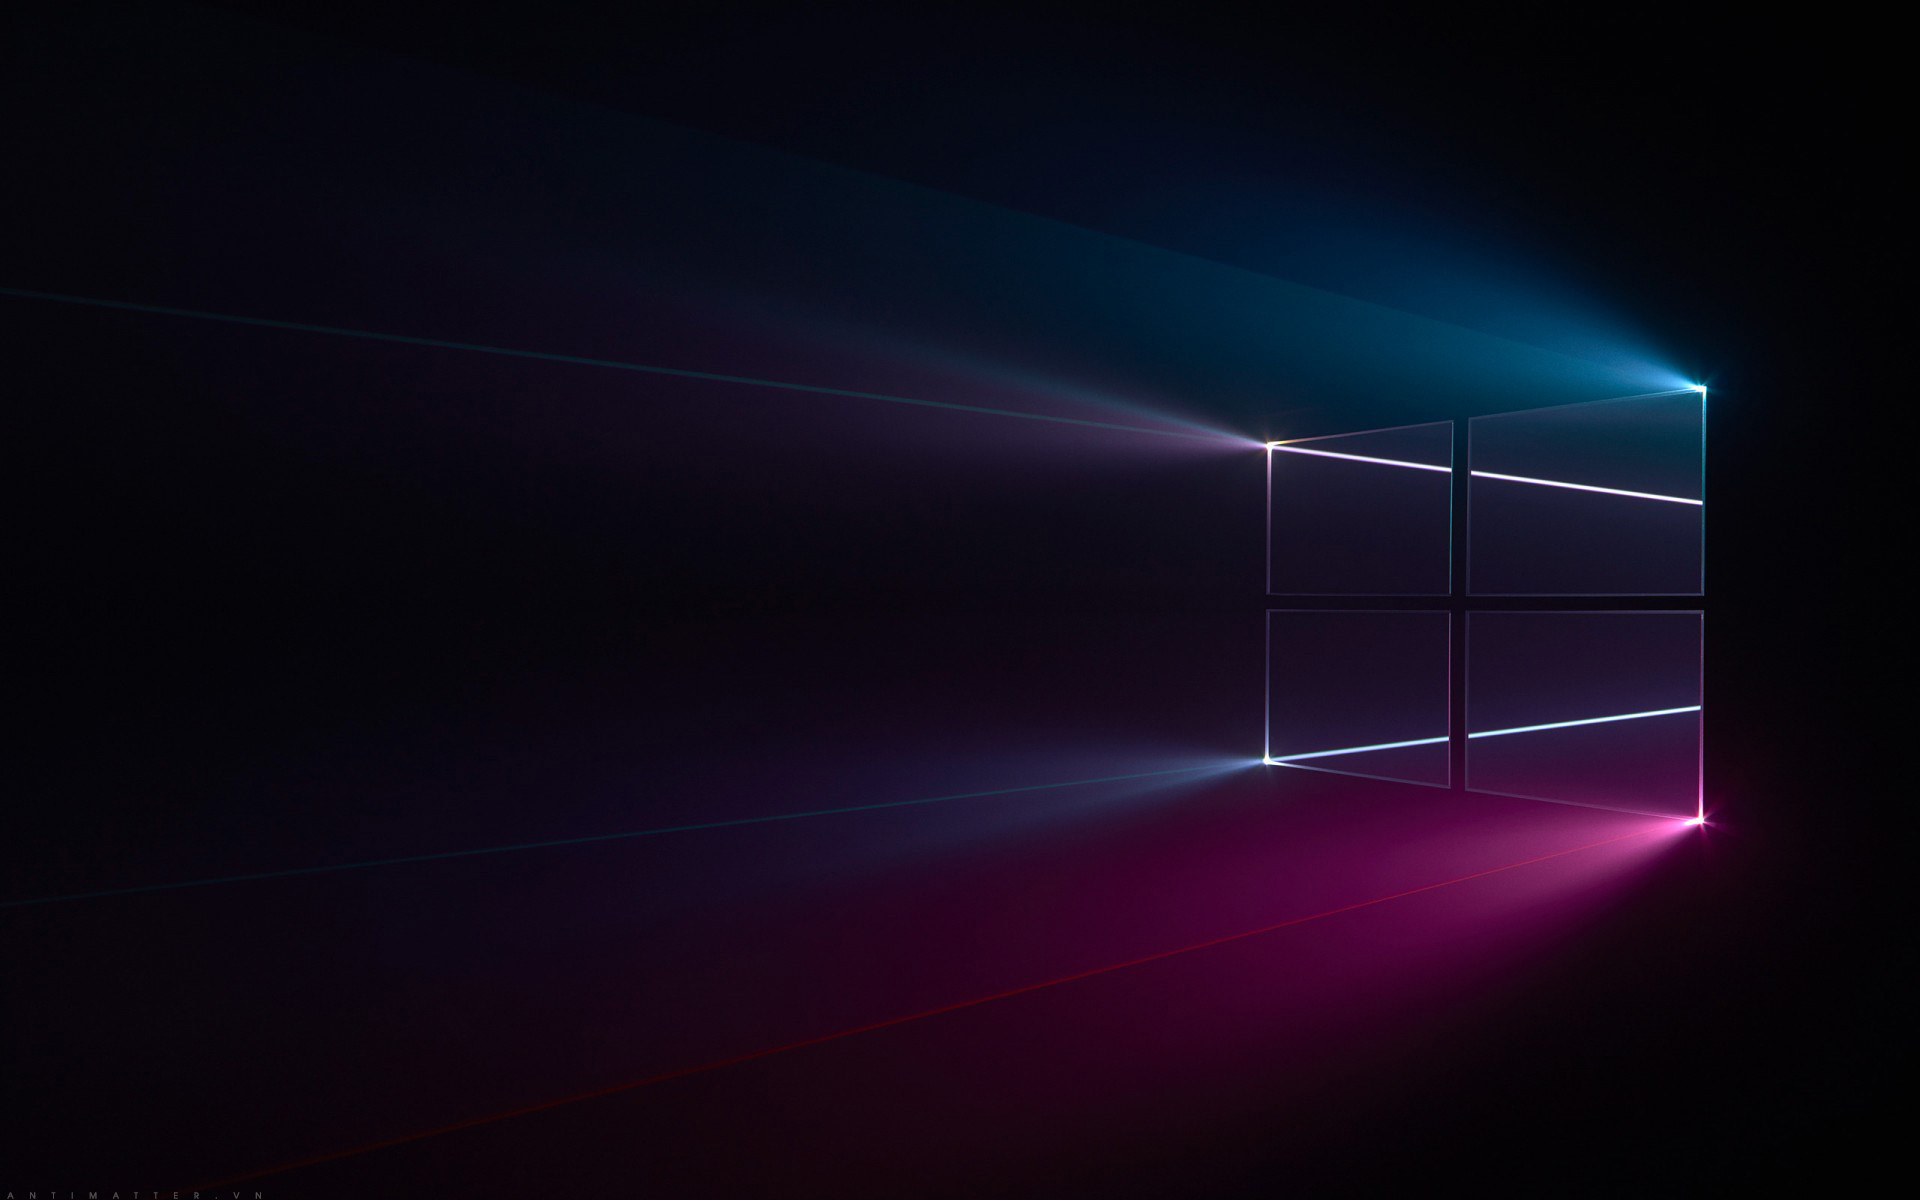 Tải về bộ ảnh hình nền cho Windows 10